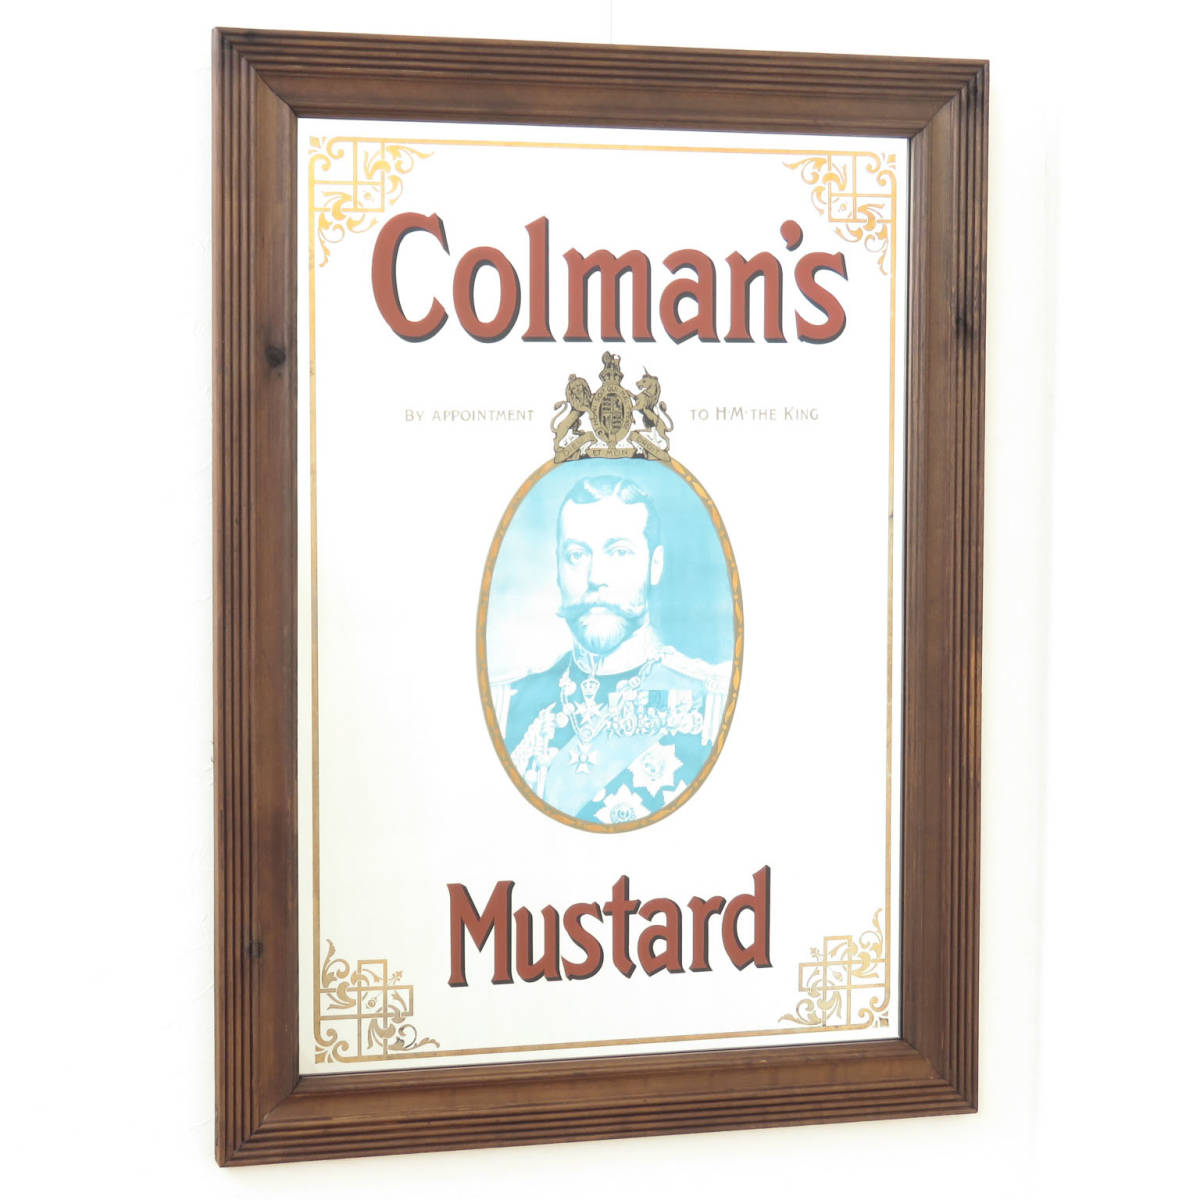 ビンテージパブミラー/コールマン マスタード (Colman's Mustard) イギリスのマスタード/大きな壁掛け鏡/店舗什器/インテリア雑貨/A-4491-2